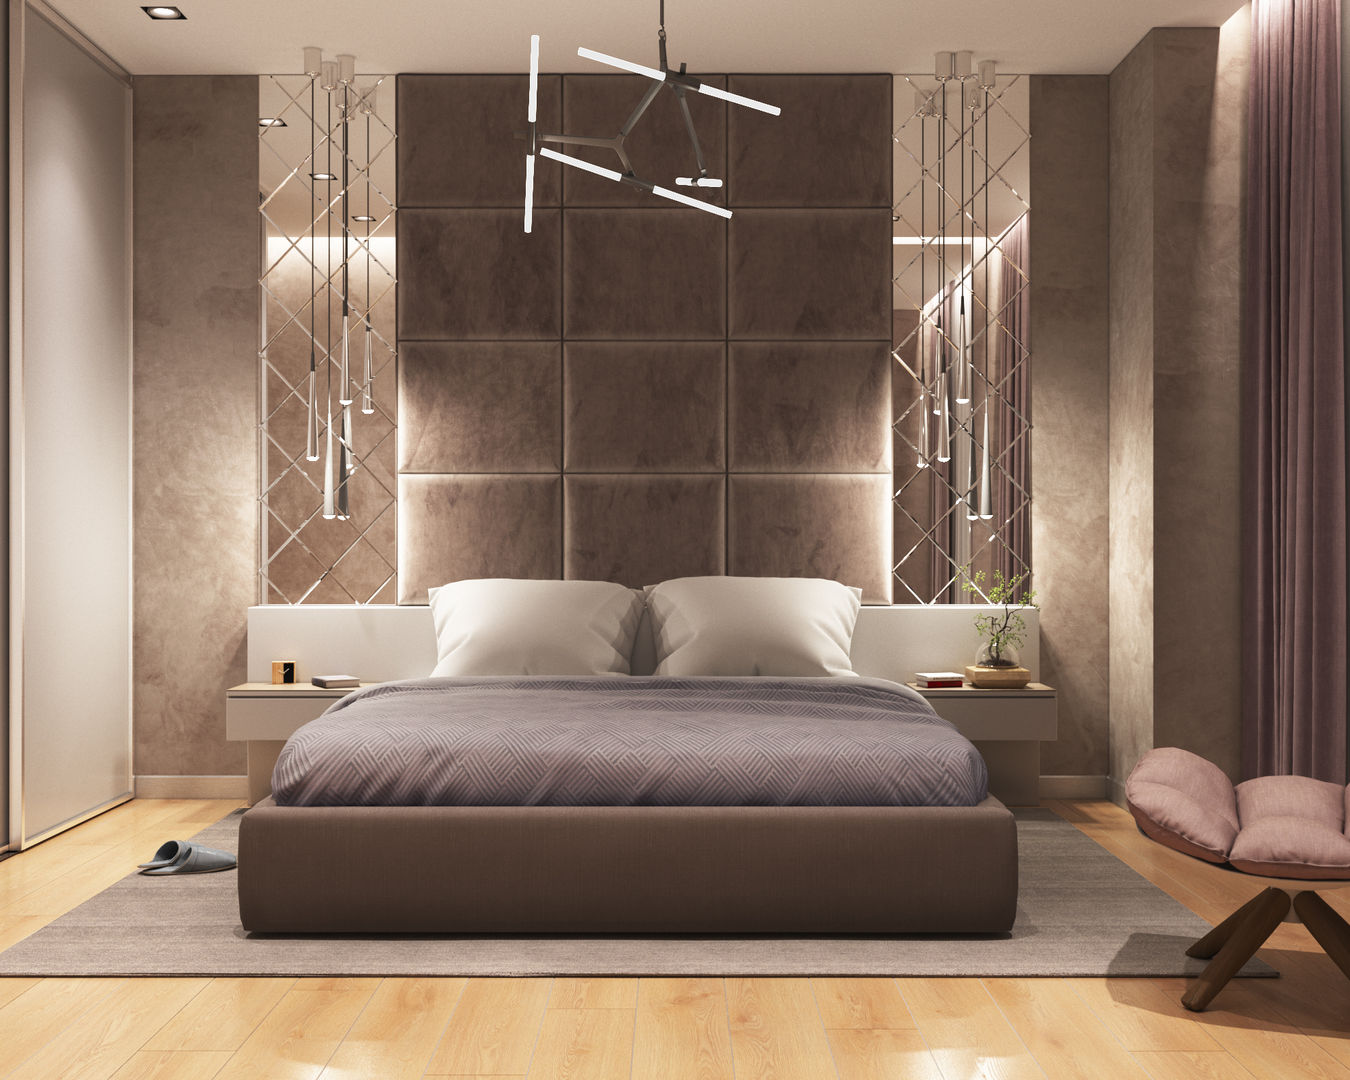 Элегантная простота, дизайн-студия ПРОСТРАНСТВО ДИЗАЙНА дизайн-студия ПРОСТРАНСТВО ДИЗАЙНА Modern style bedroom